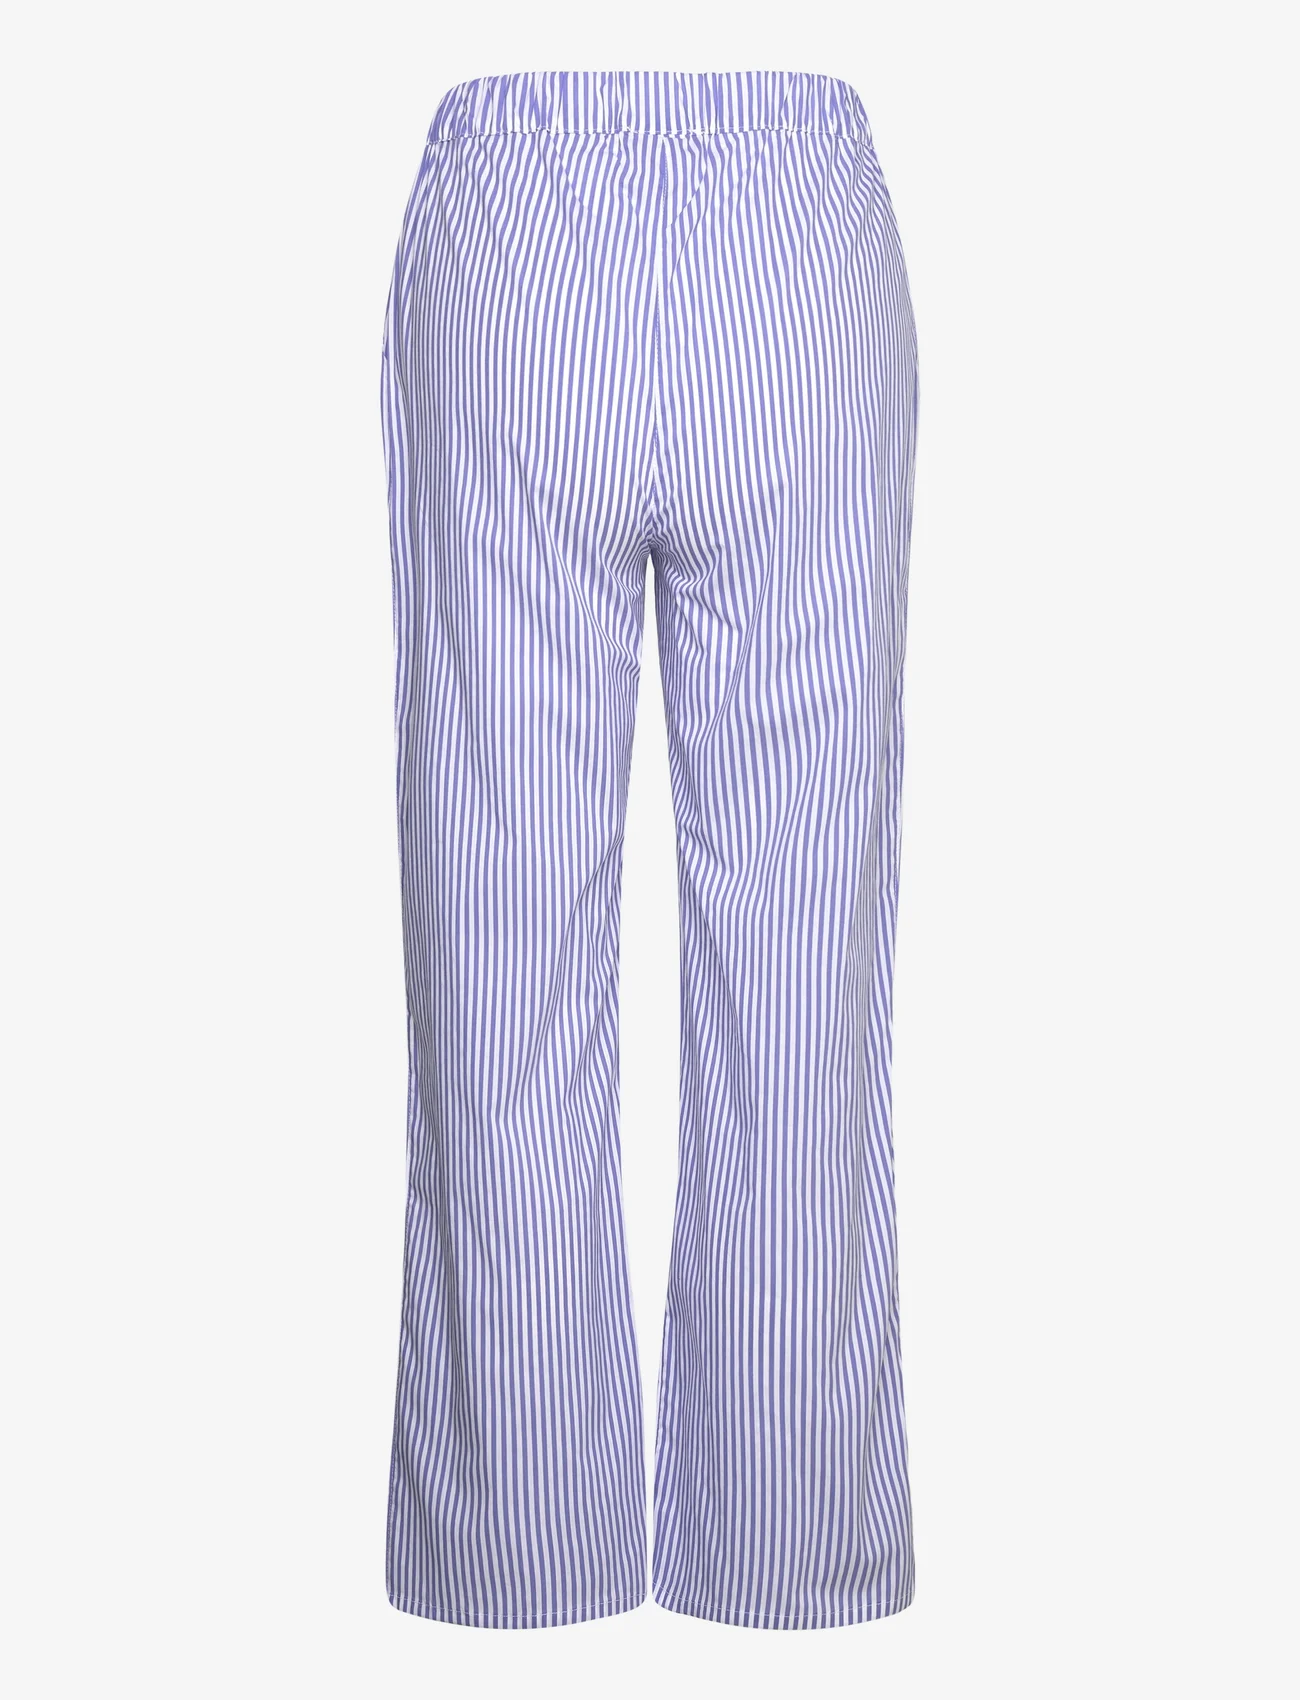 Etam - Cleeo Trouser Pyjama Bottom - women - blue - 1